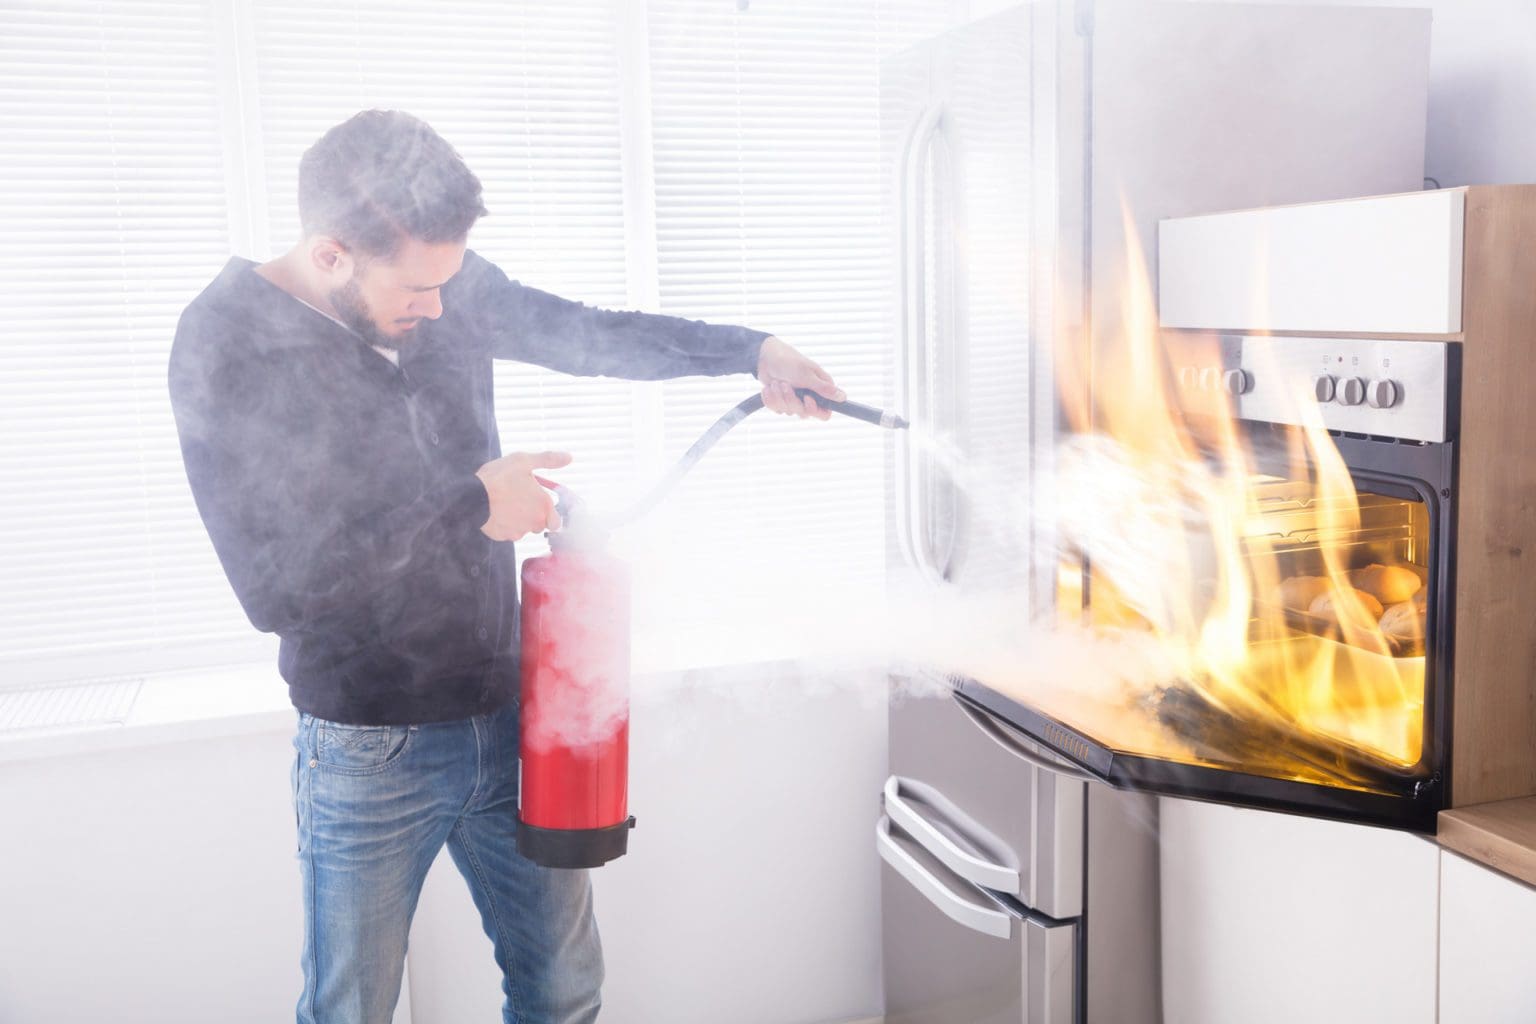 Küchenbrand - Was zahlt die Versicherung? Wer zahlt? Hausrat? (© Andrey Popov / stock.adobe.com)